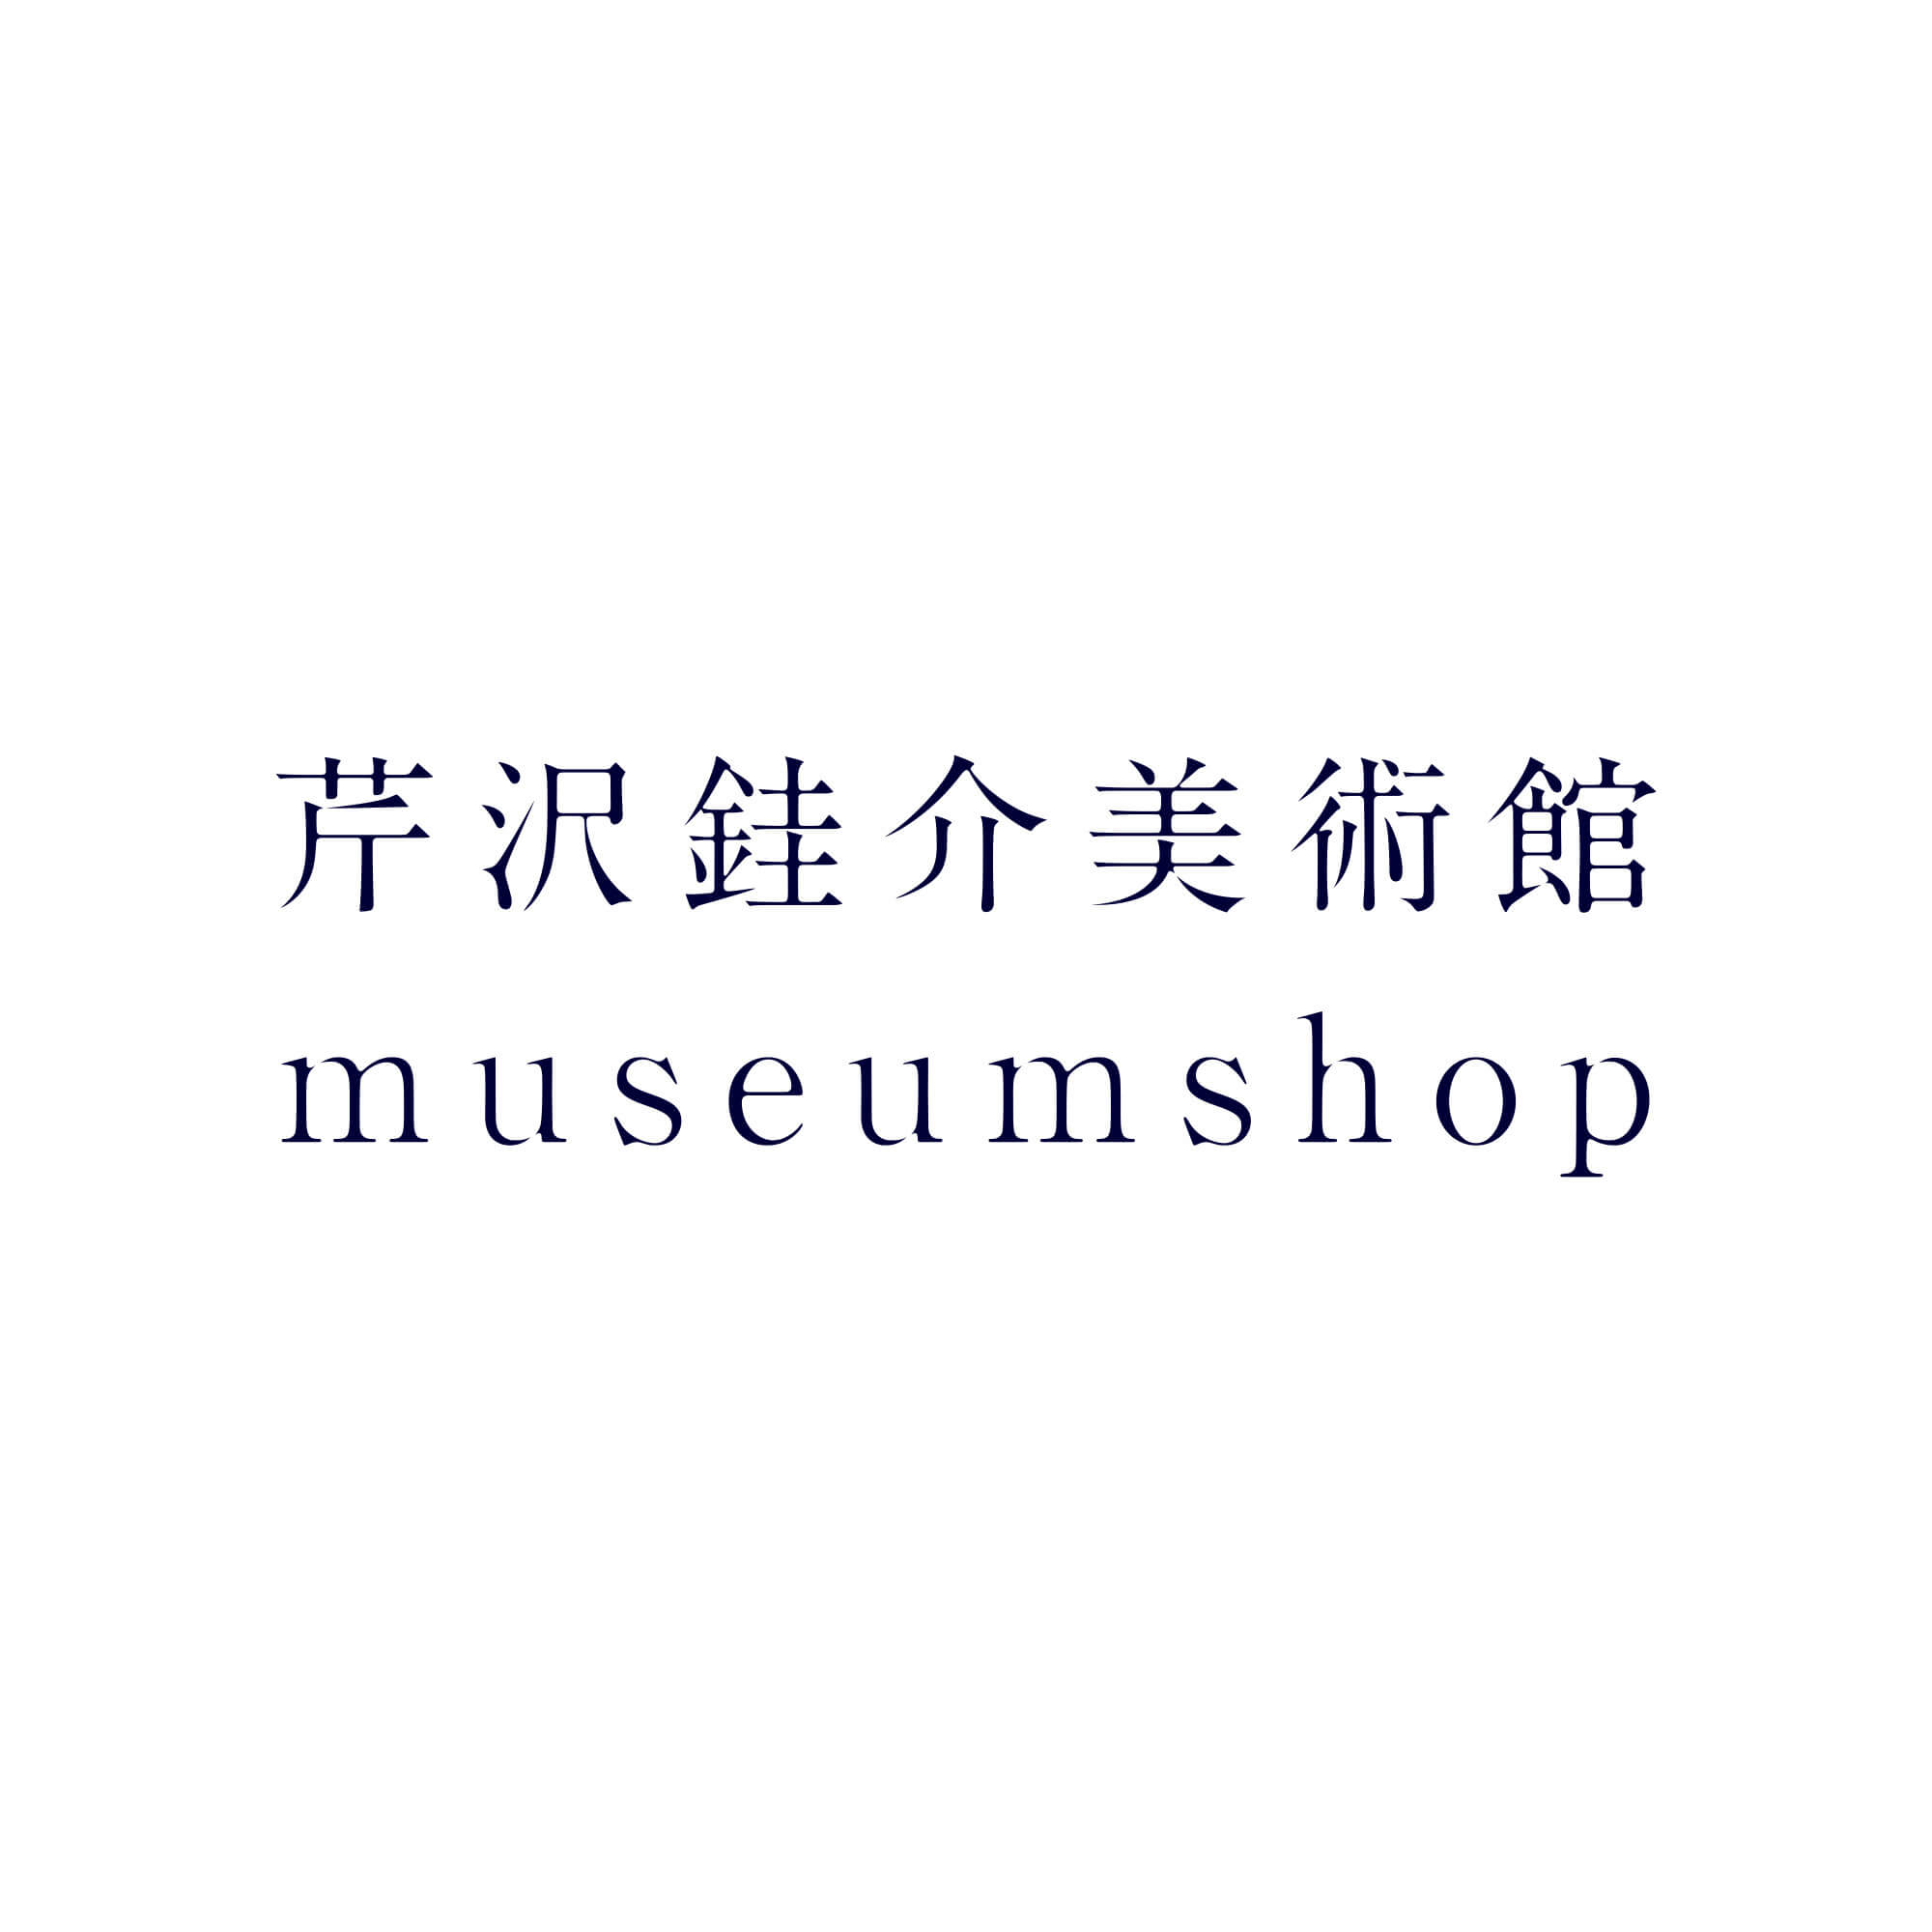 芹沢銈介美術館 museumshop